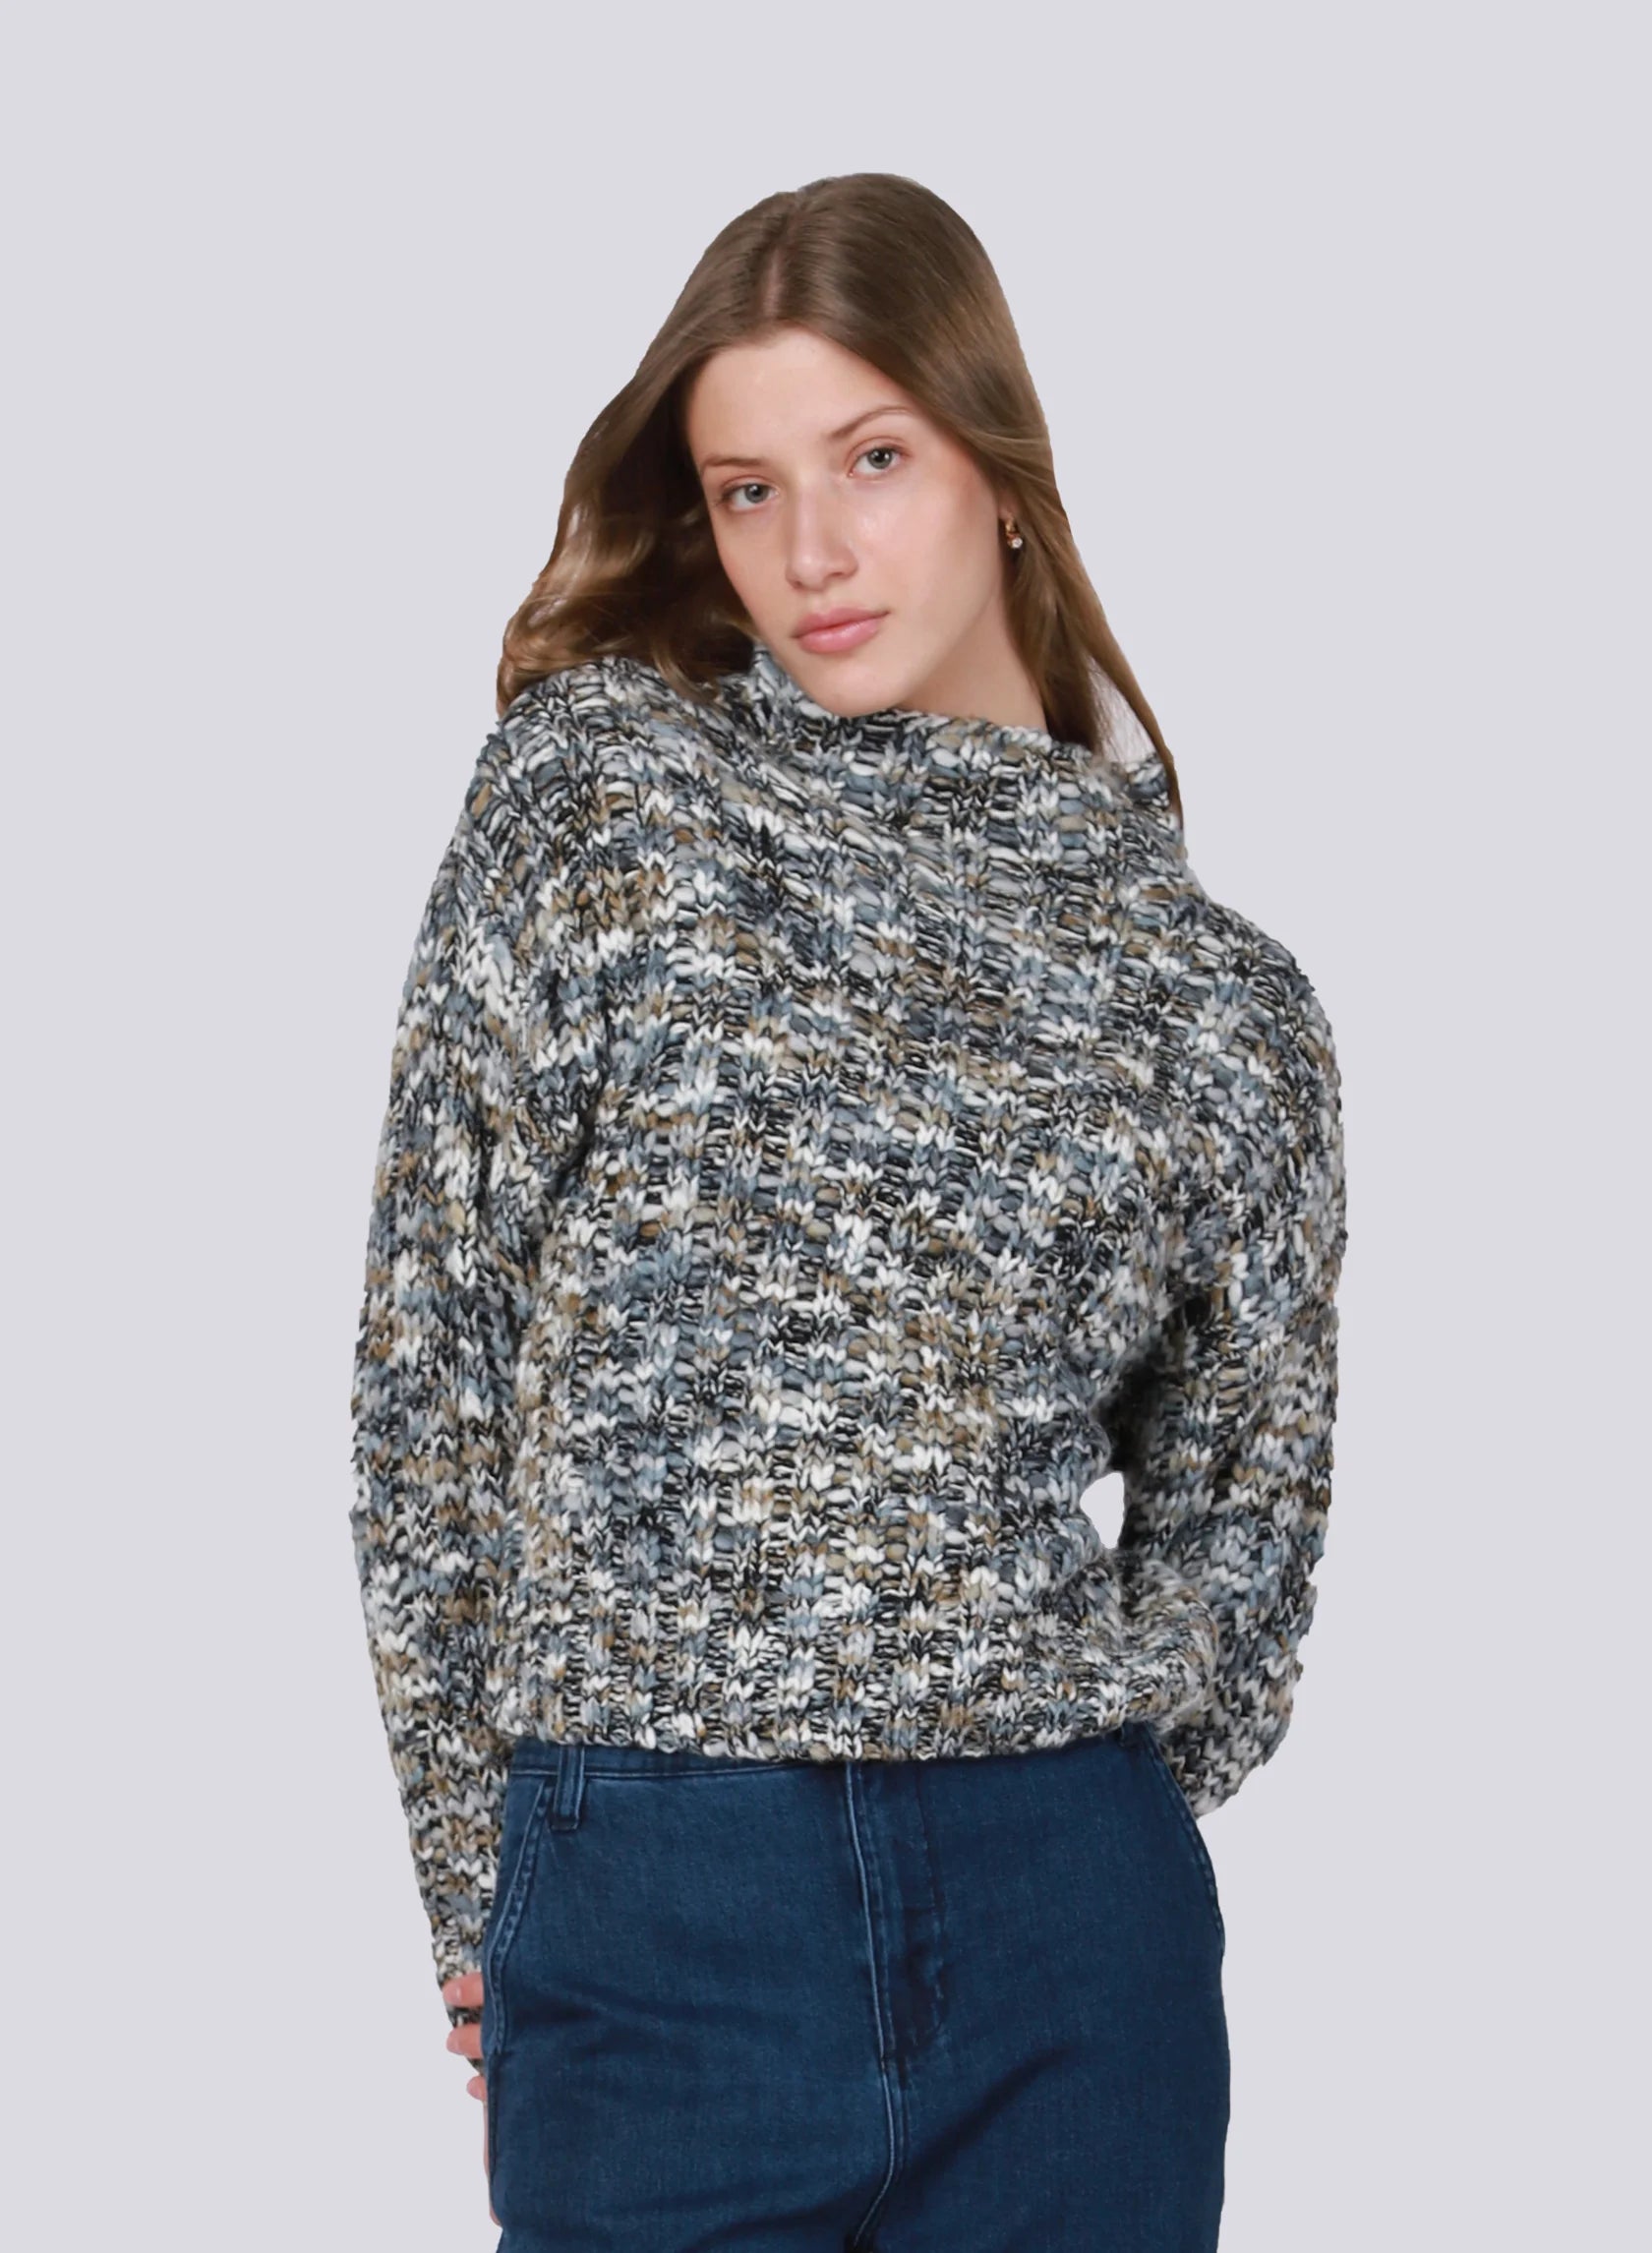 DEX-textured stitch sweater-LIGHT/DARK GREY